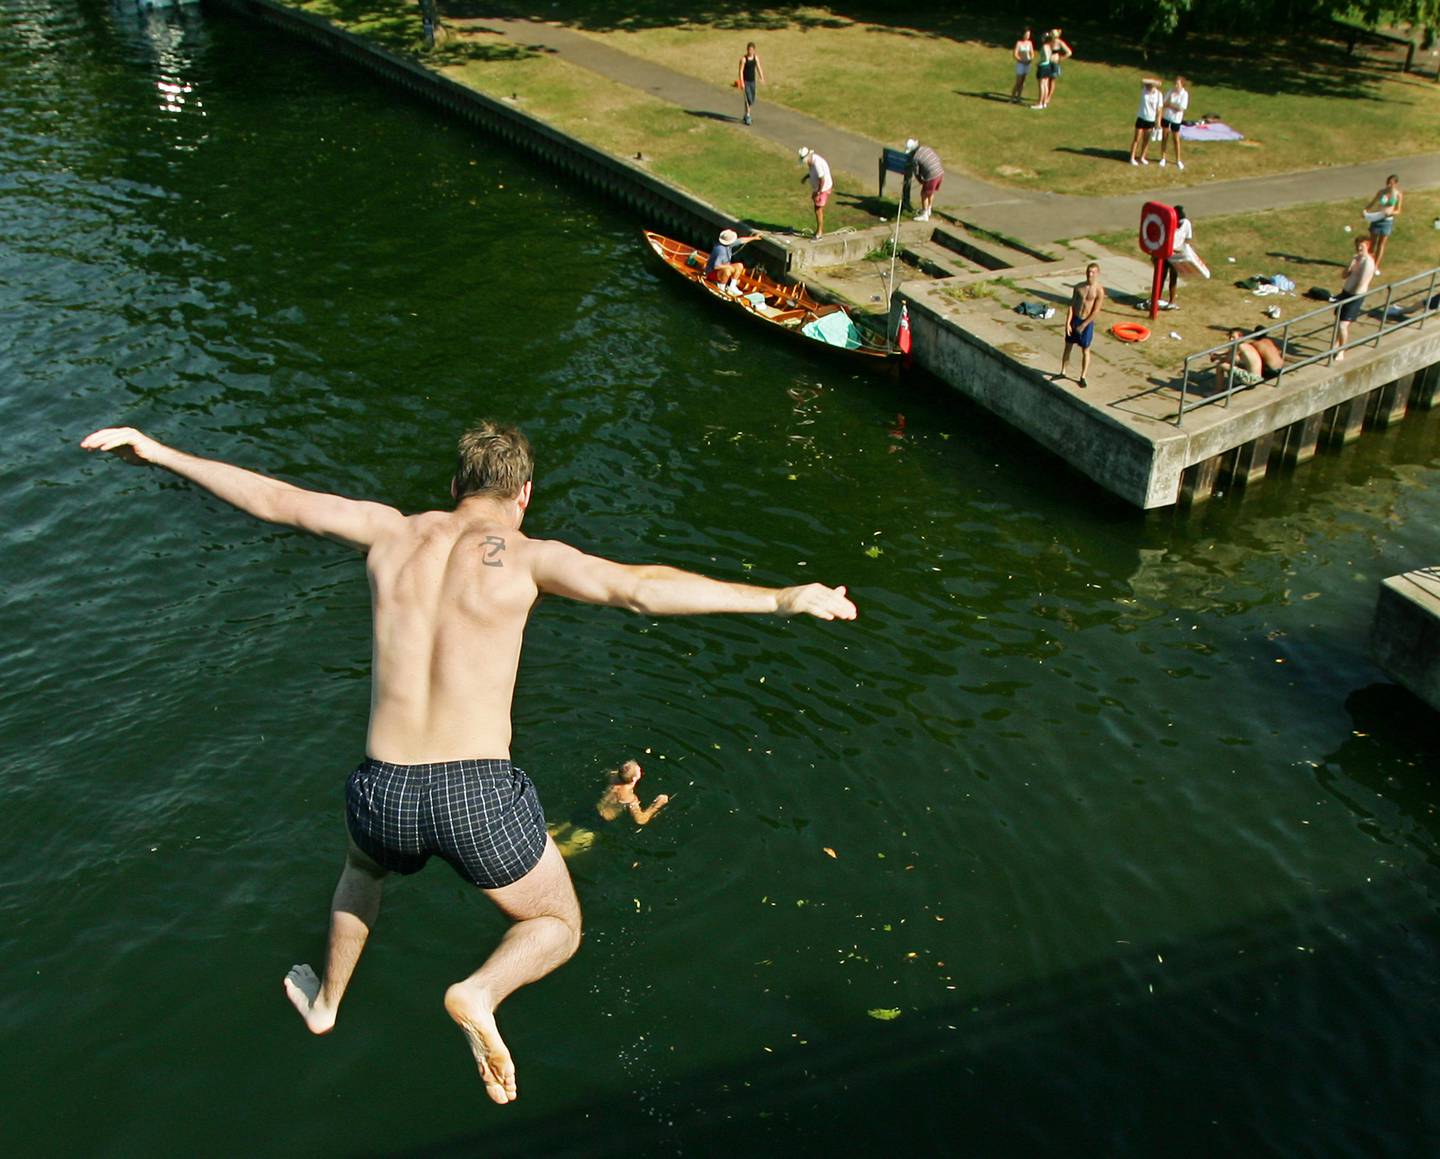 En gutt hopper i Themsen ved Windsor for et forfriskende bad. Siden bildet ble tatt i 2006, har imidlertid vannkvaliteten i Storbritannia falt betraktelig, mye takket være de konservatives manglende miljøpolitikk etter Brexit.